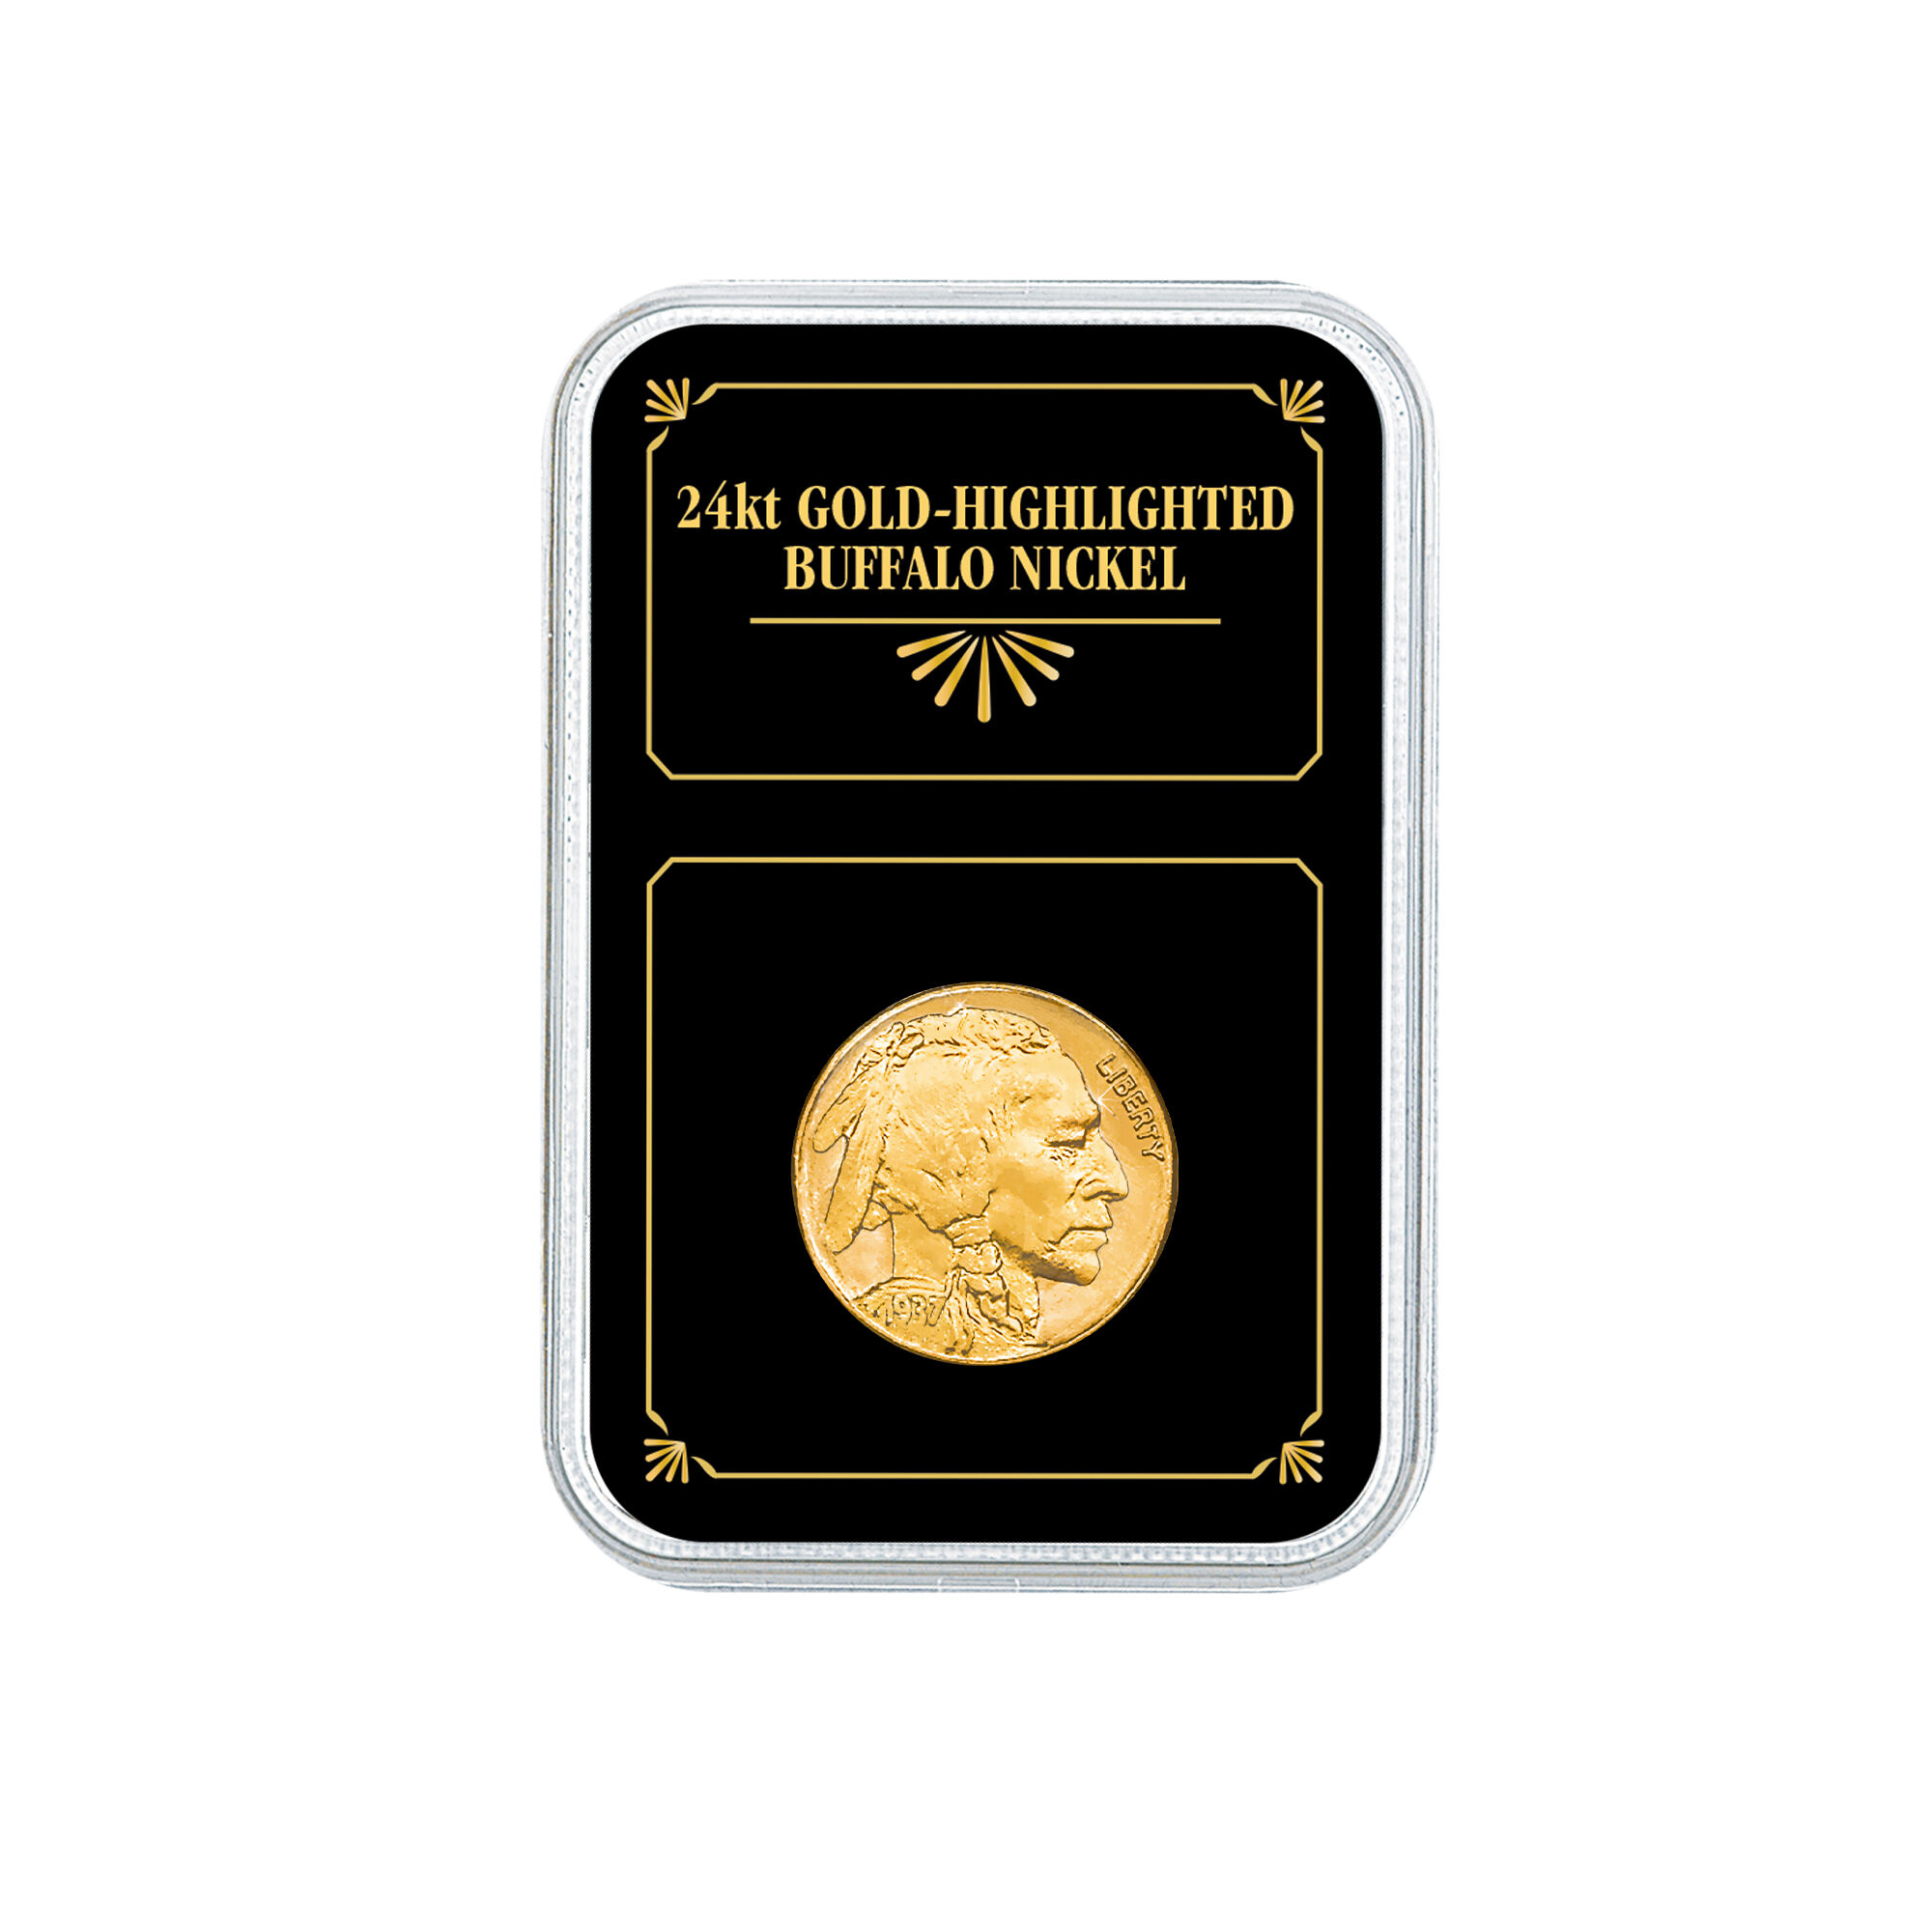 Gold Enhanced US Coins 11130 0018 b showpack